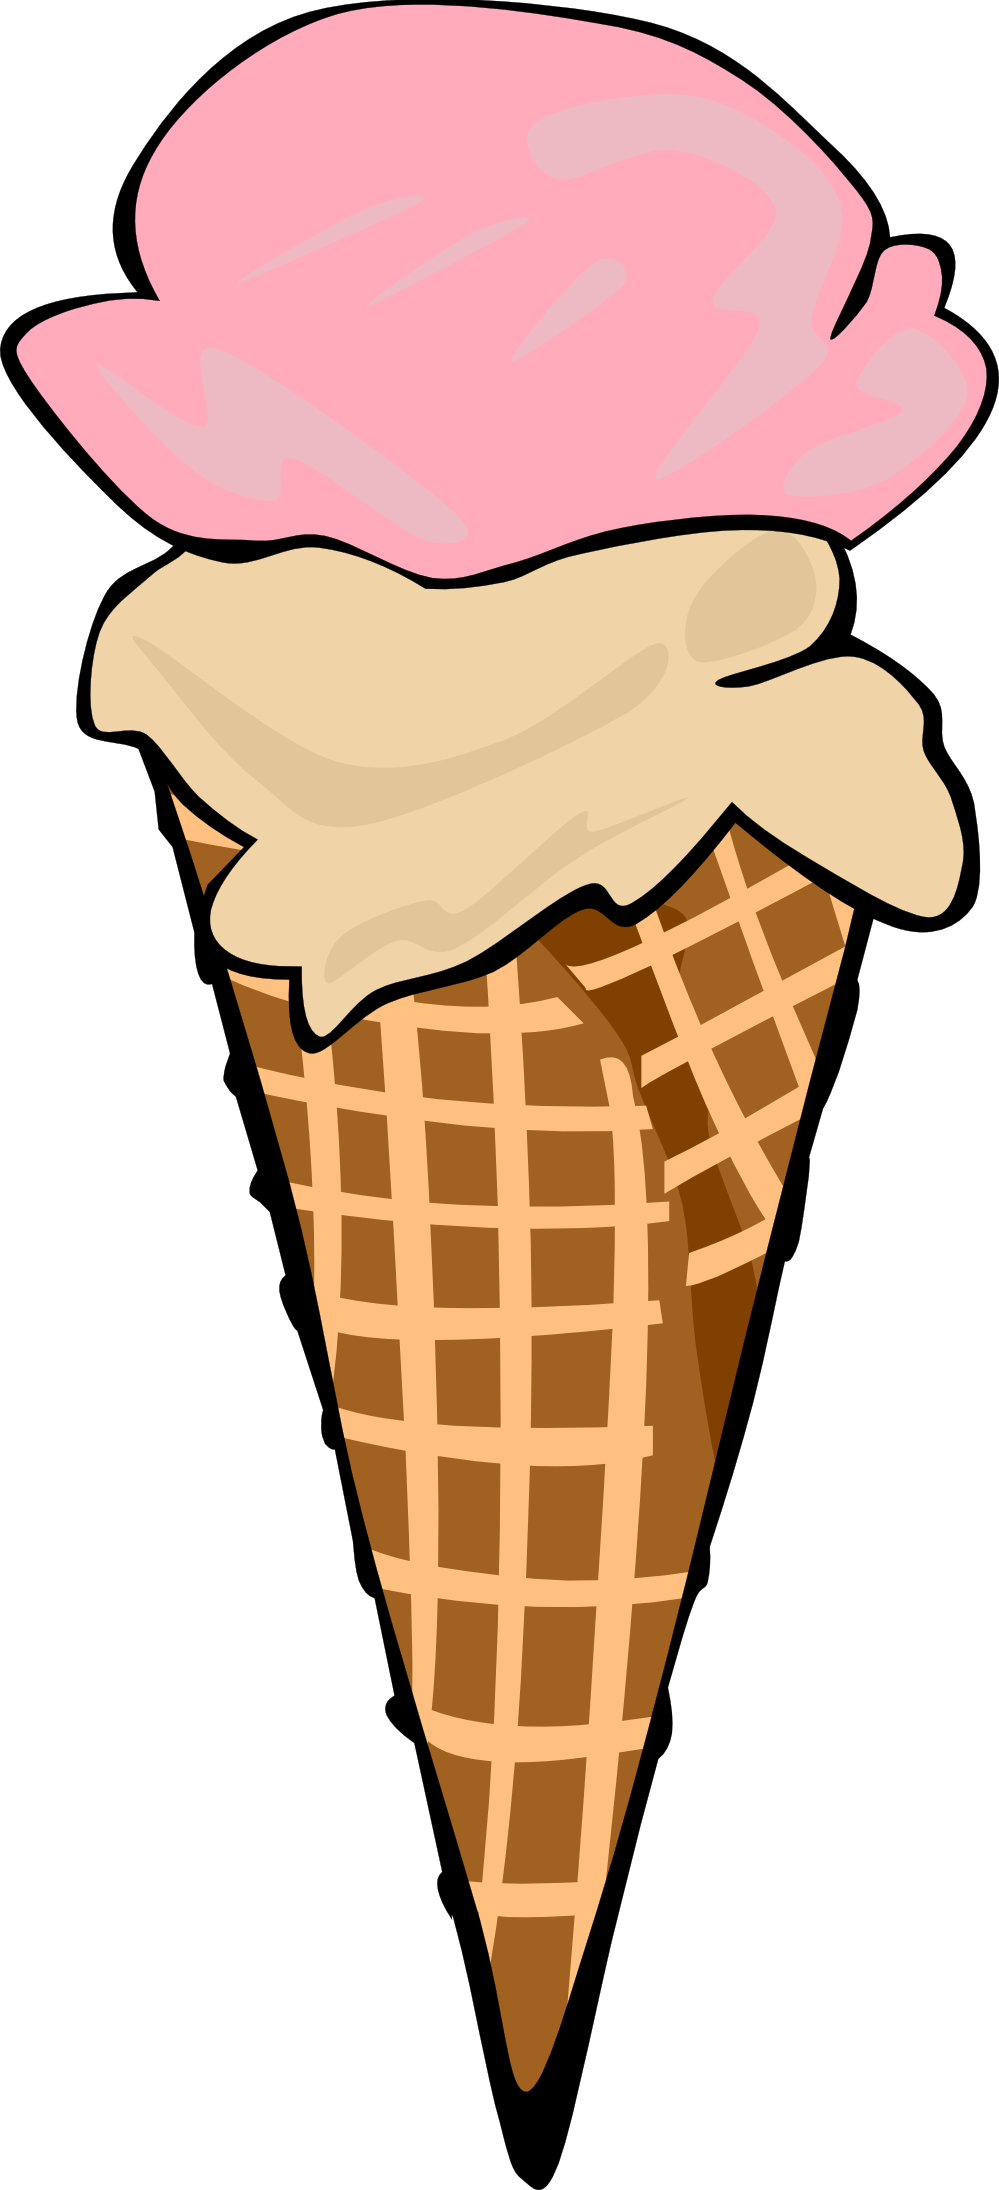 Ice cream  free ice cream cone empty ice creamne clipart free images